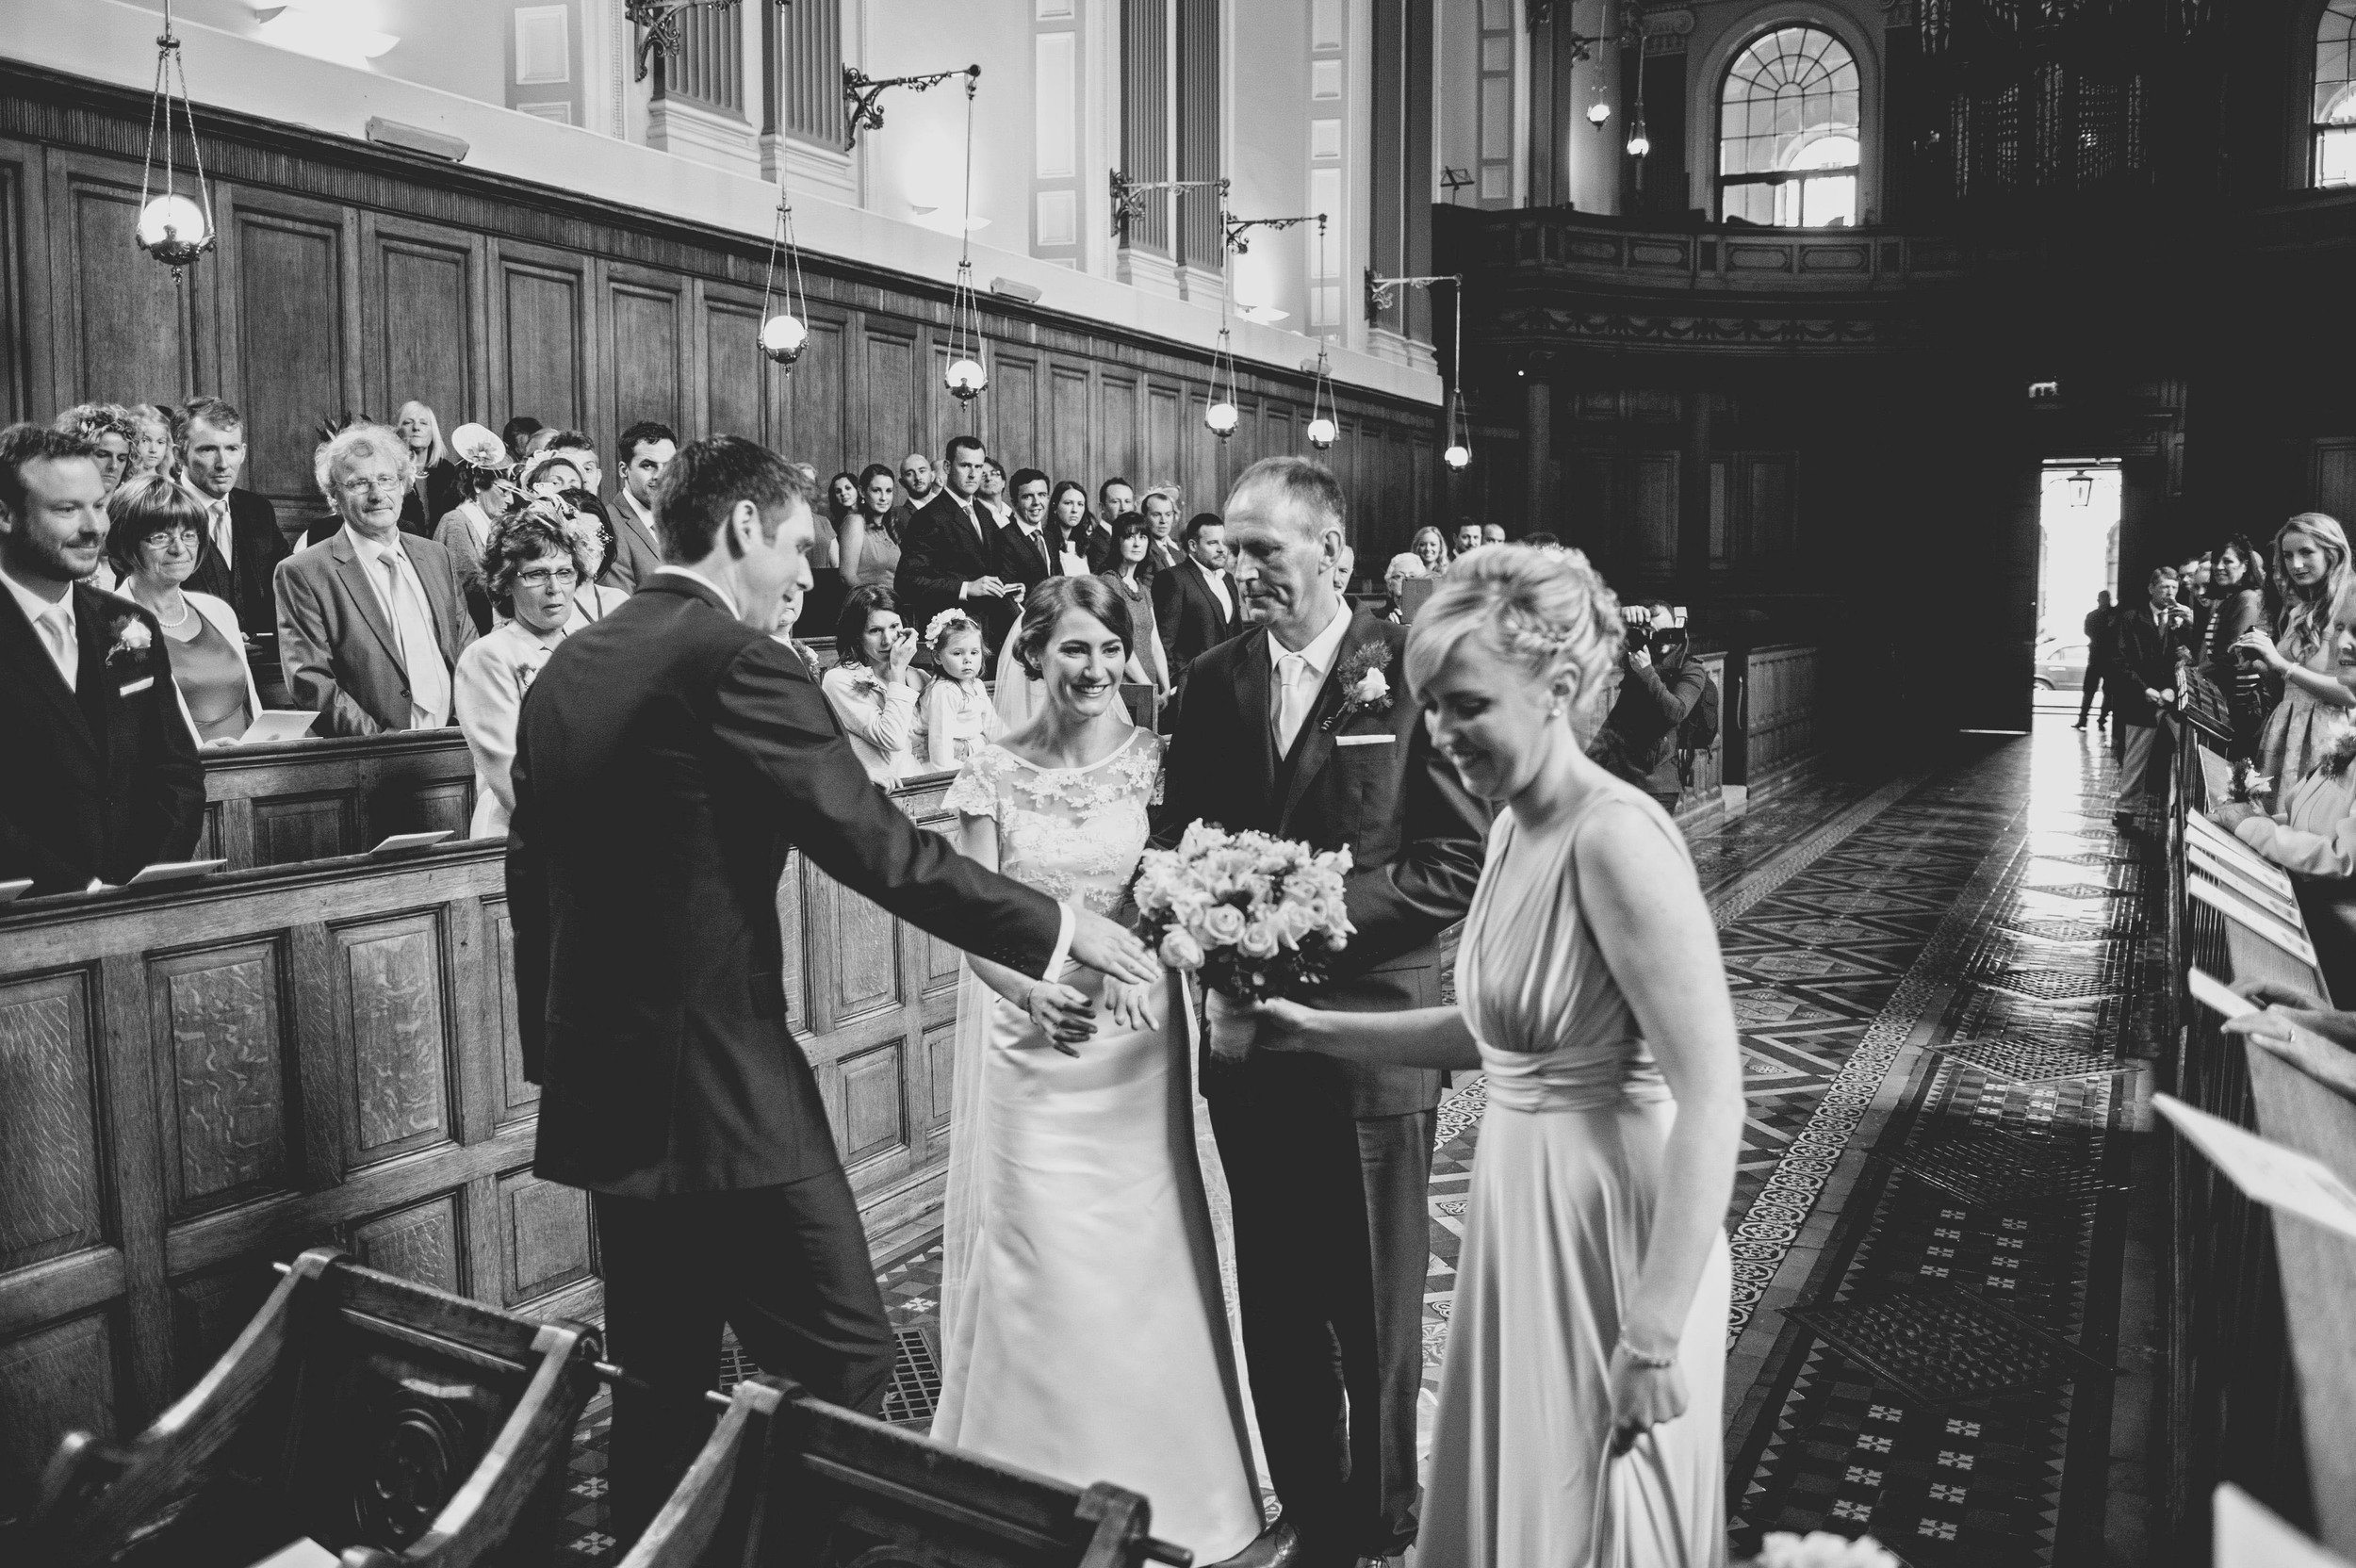 Wedding service at Trinity Chapel Dublin